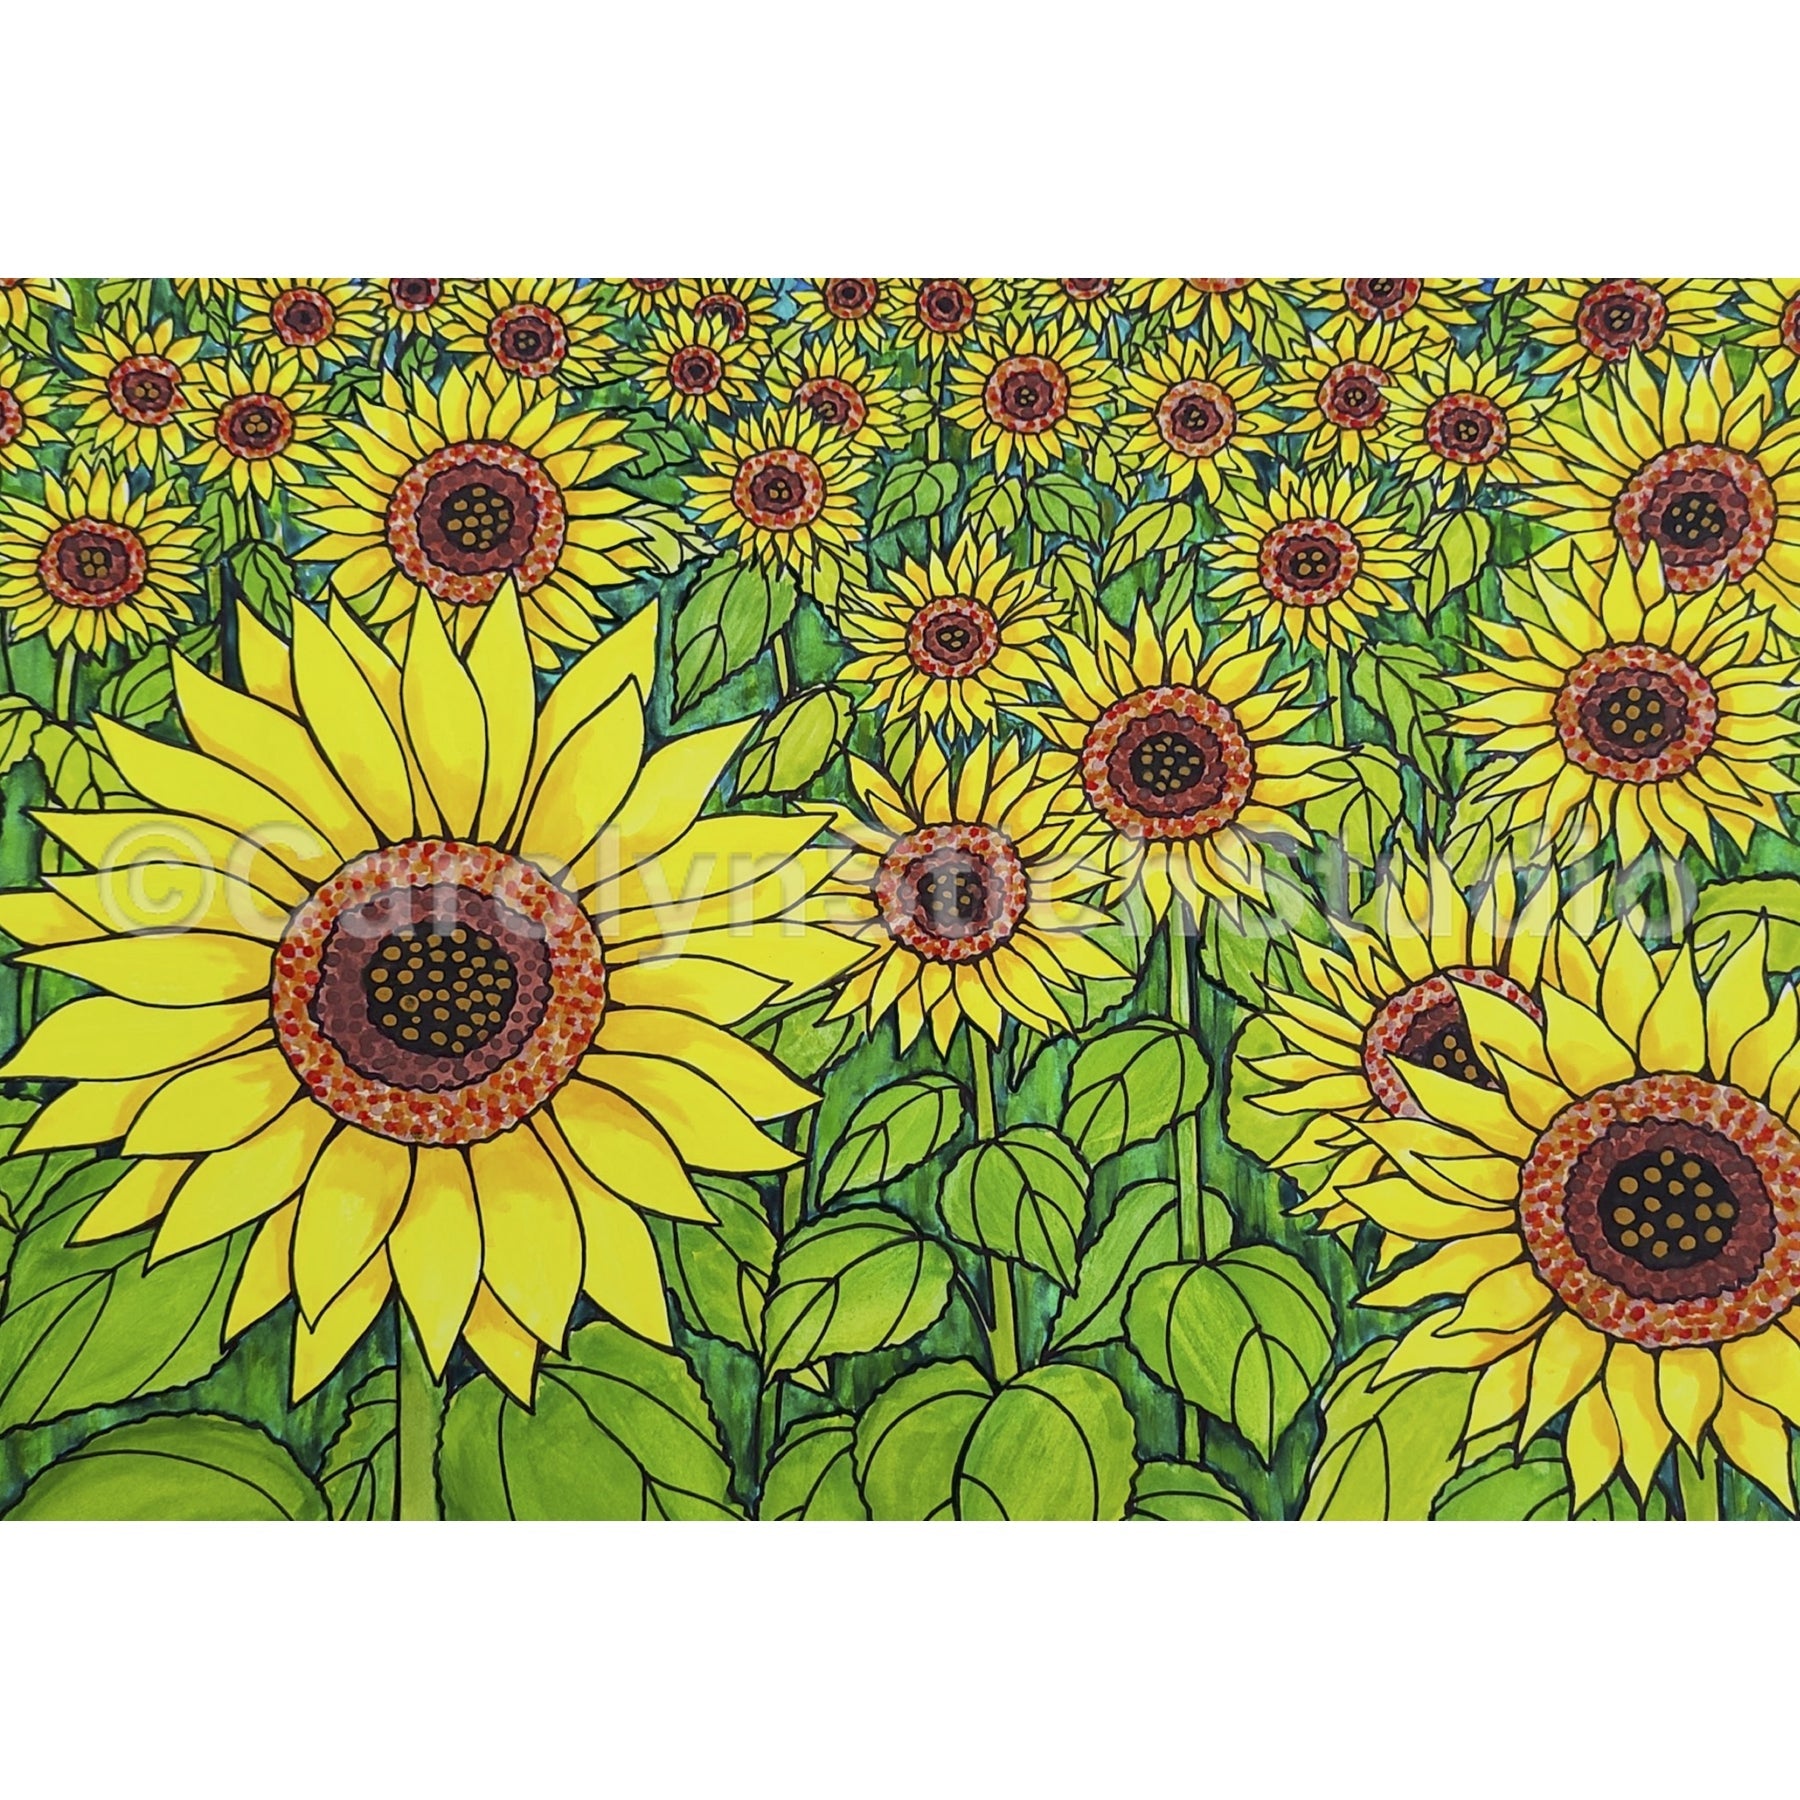 Sunflower Field, rug hooking pattern